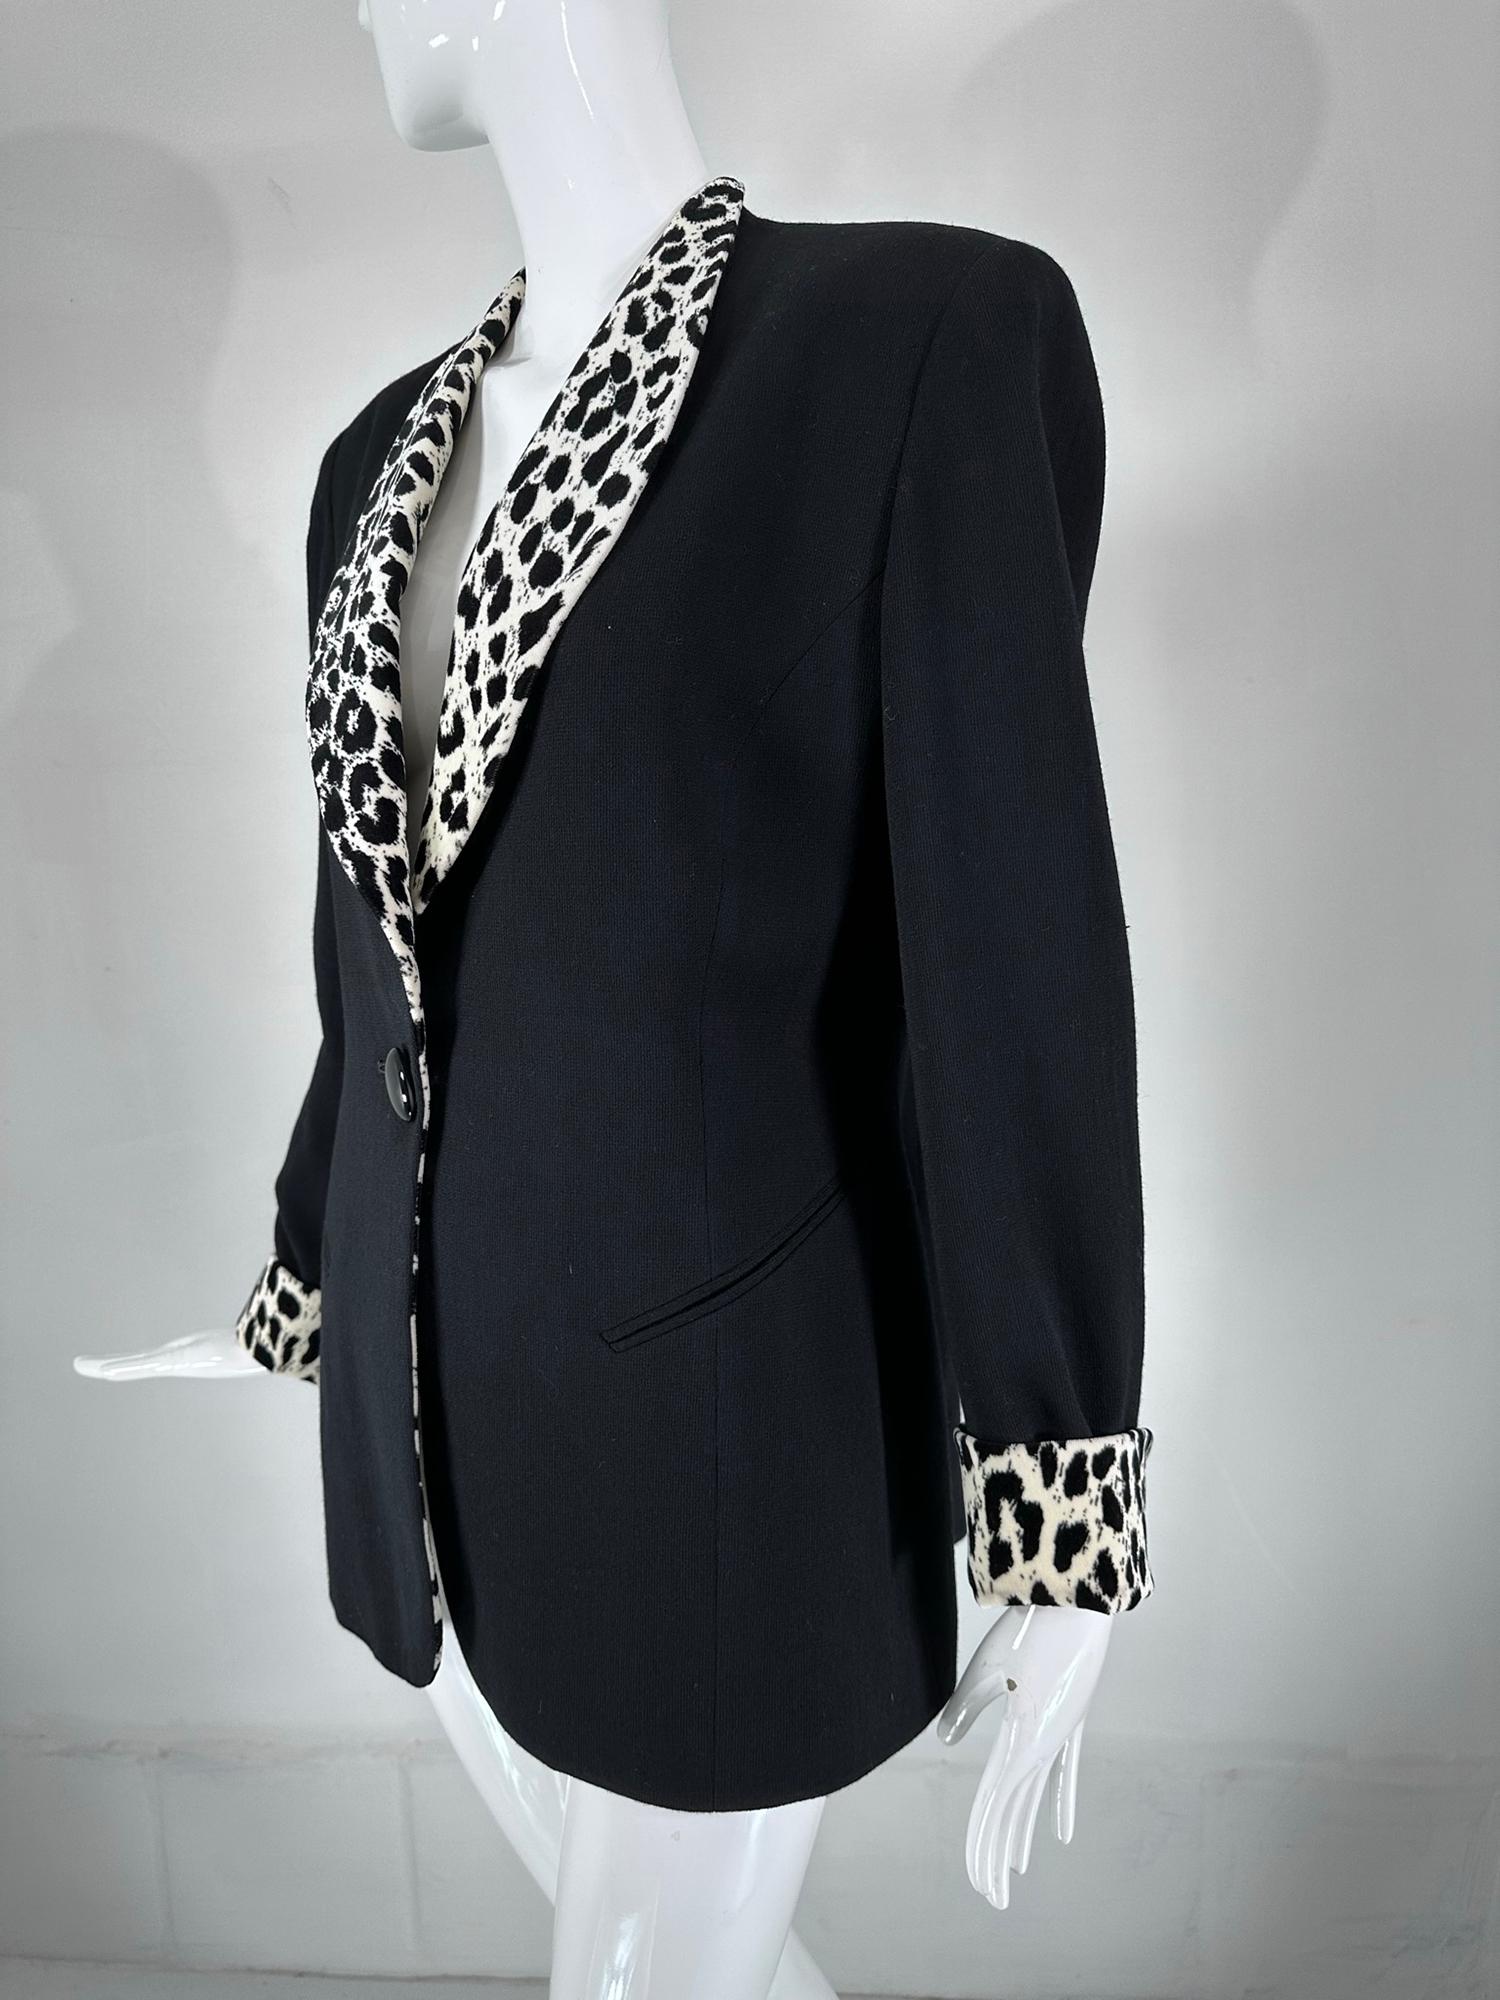 Christian Dior Black Princess Seam Tuxedo Jacket Black White Velvet Lapels 1990s For Sale 6